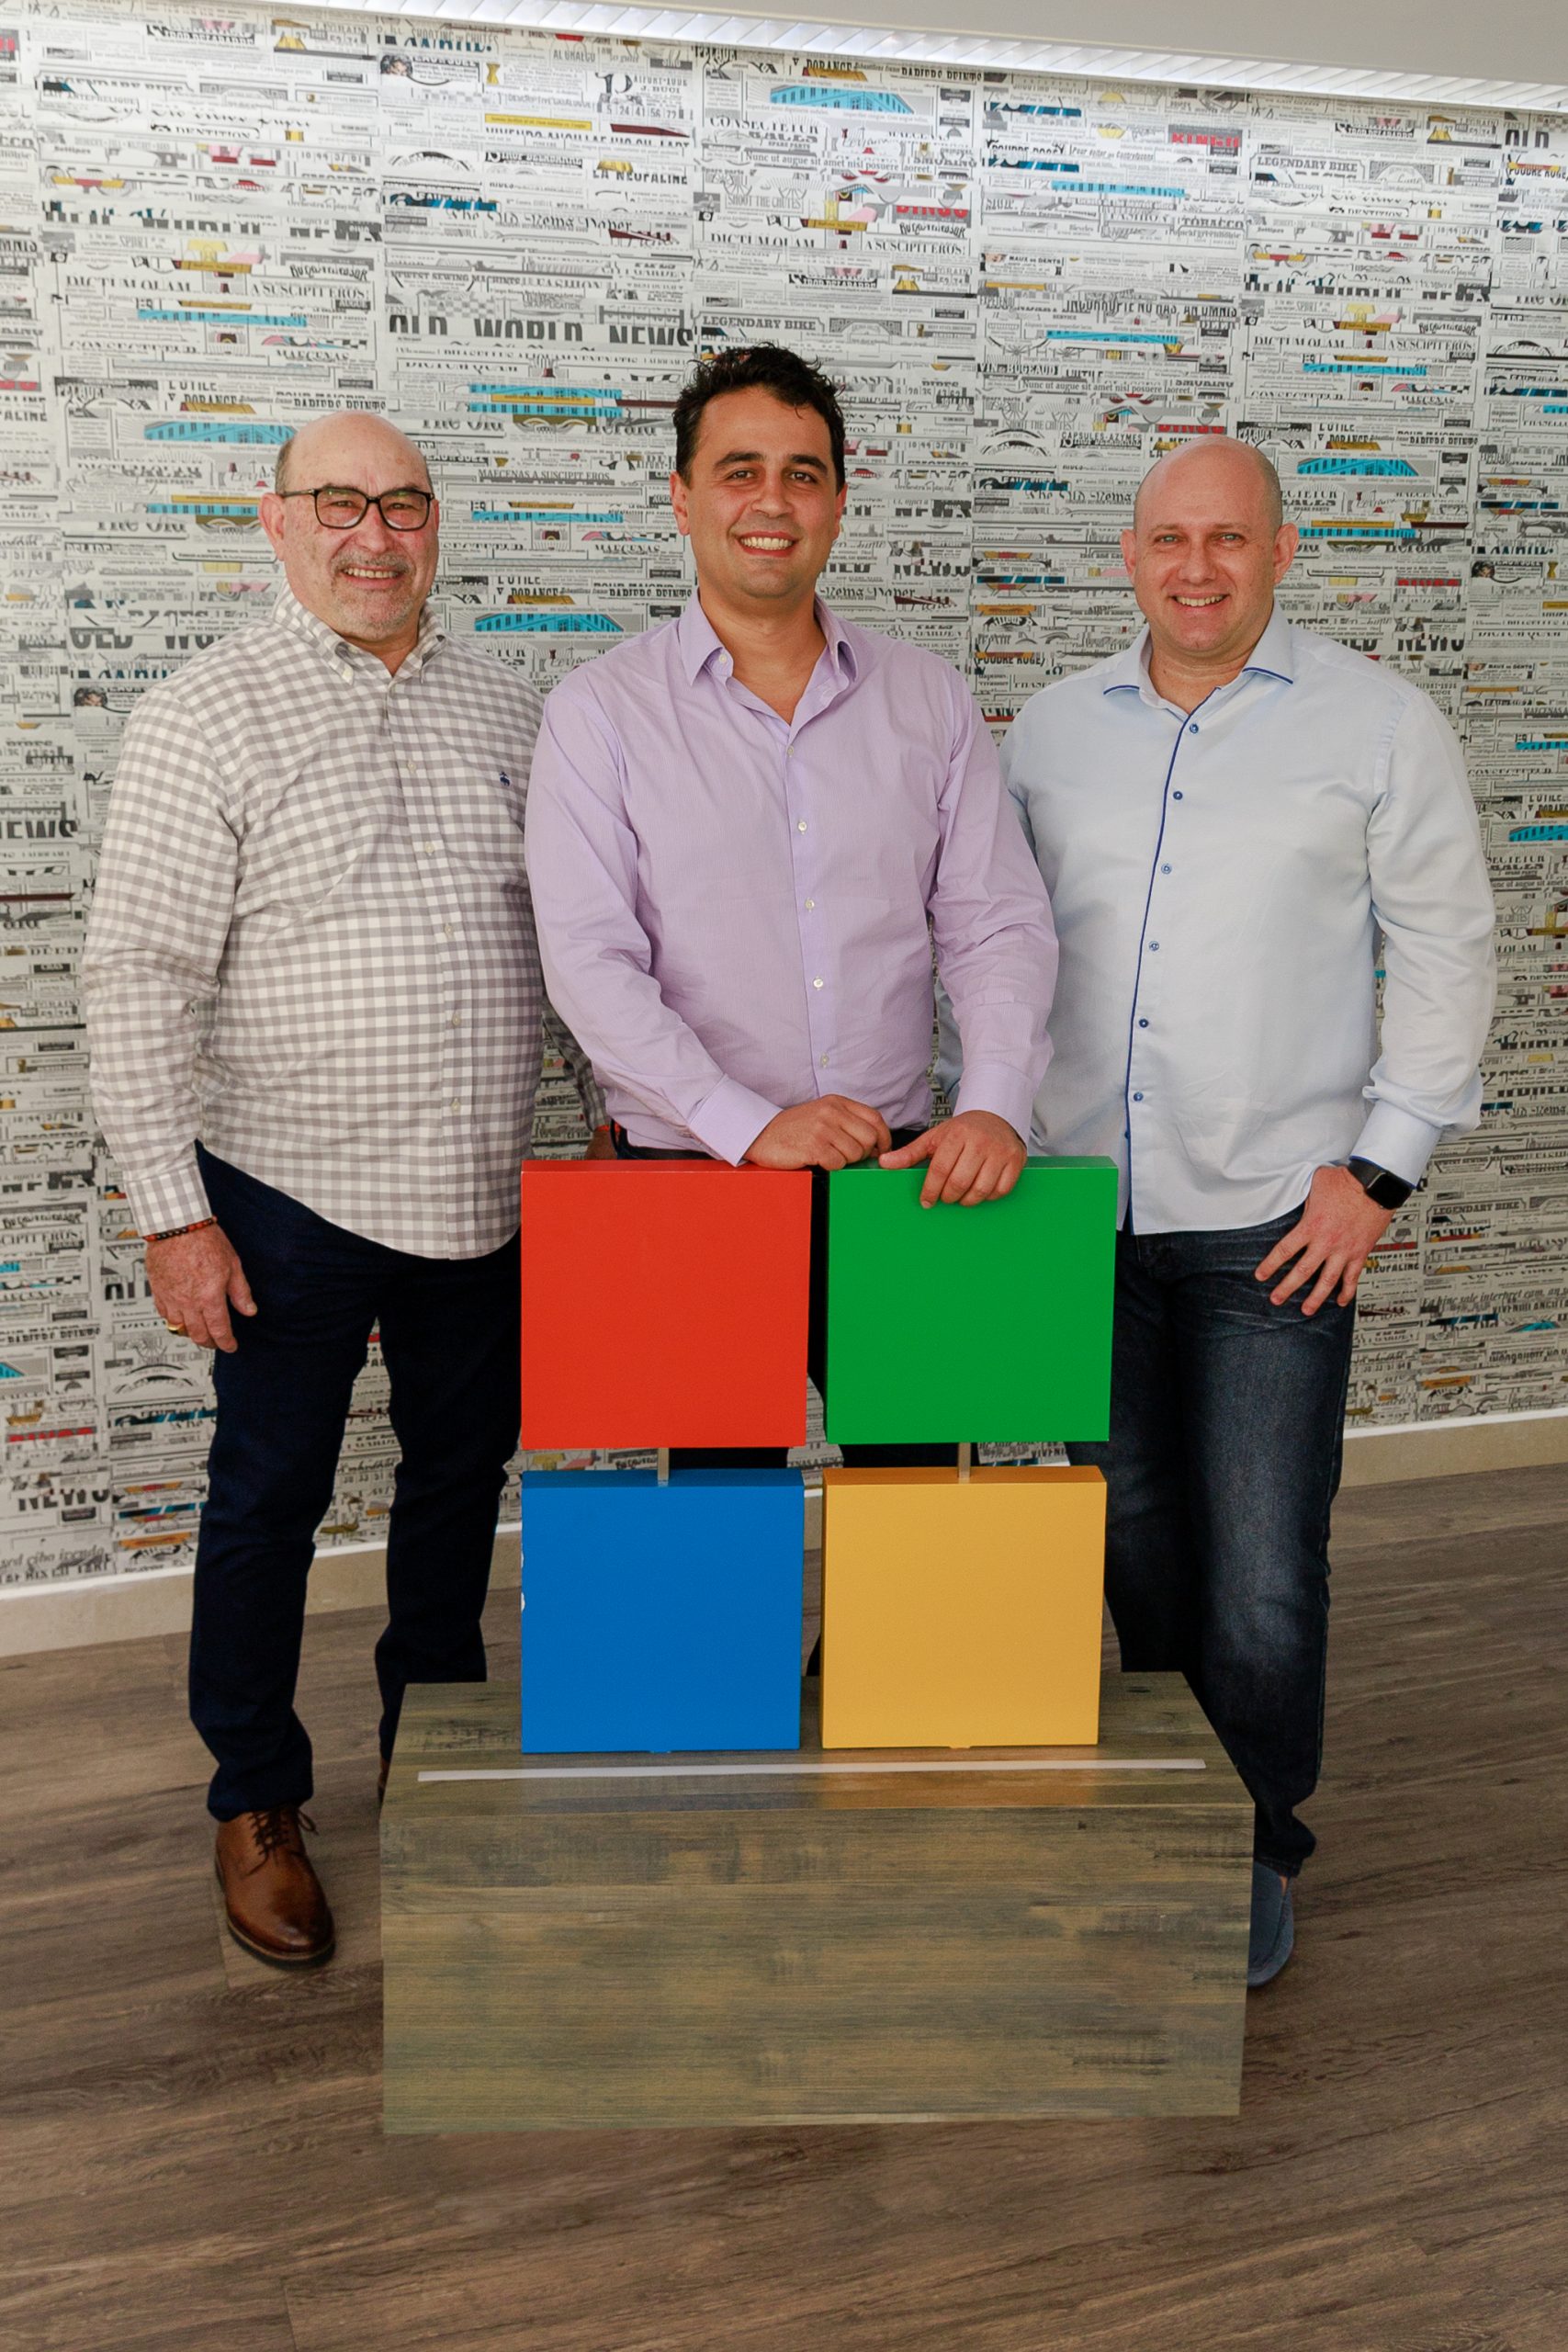 Tres hombres de pie detrás del logo de Microsoft